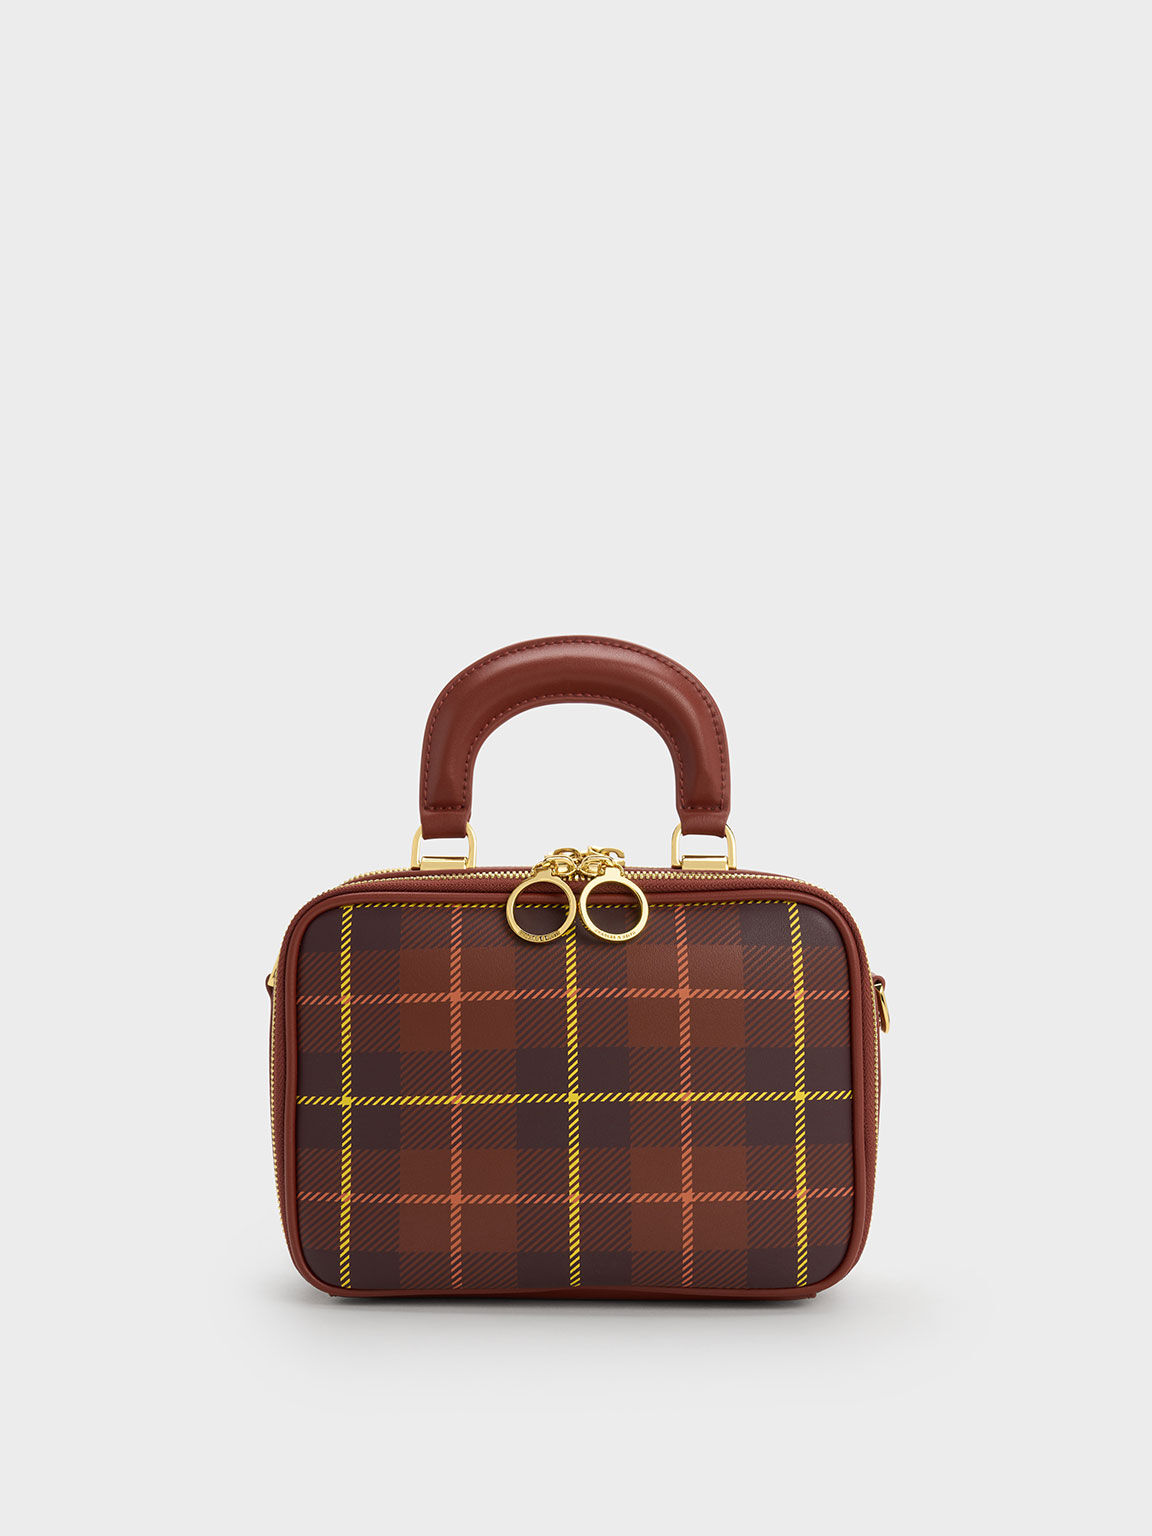 Summer IT Blouse & Wedges + Louis Vuitton Bags